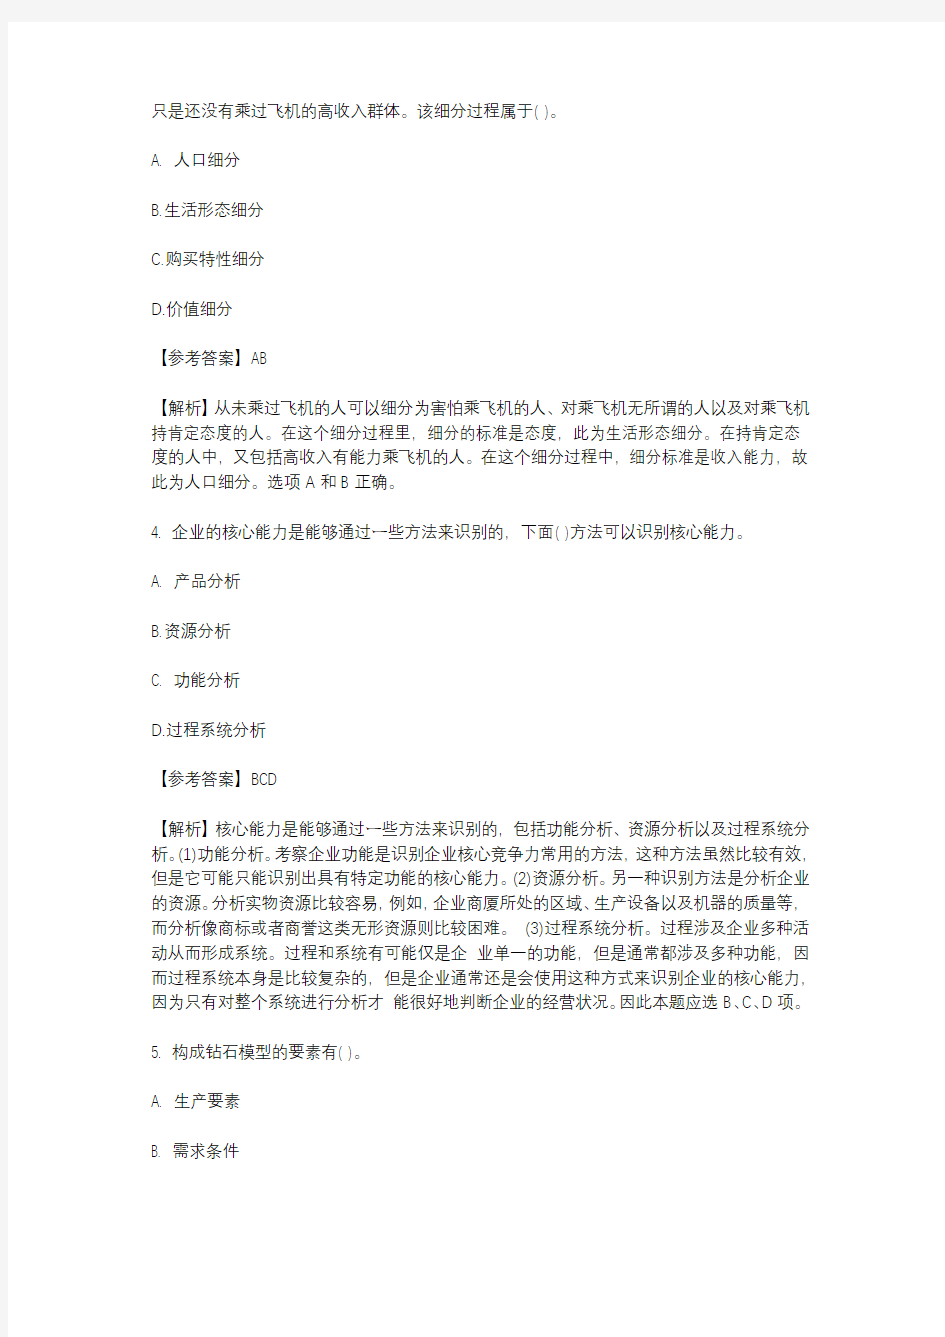 北京乐考网-注册会计师《战略》2013年度多选试题及答案解析